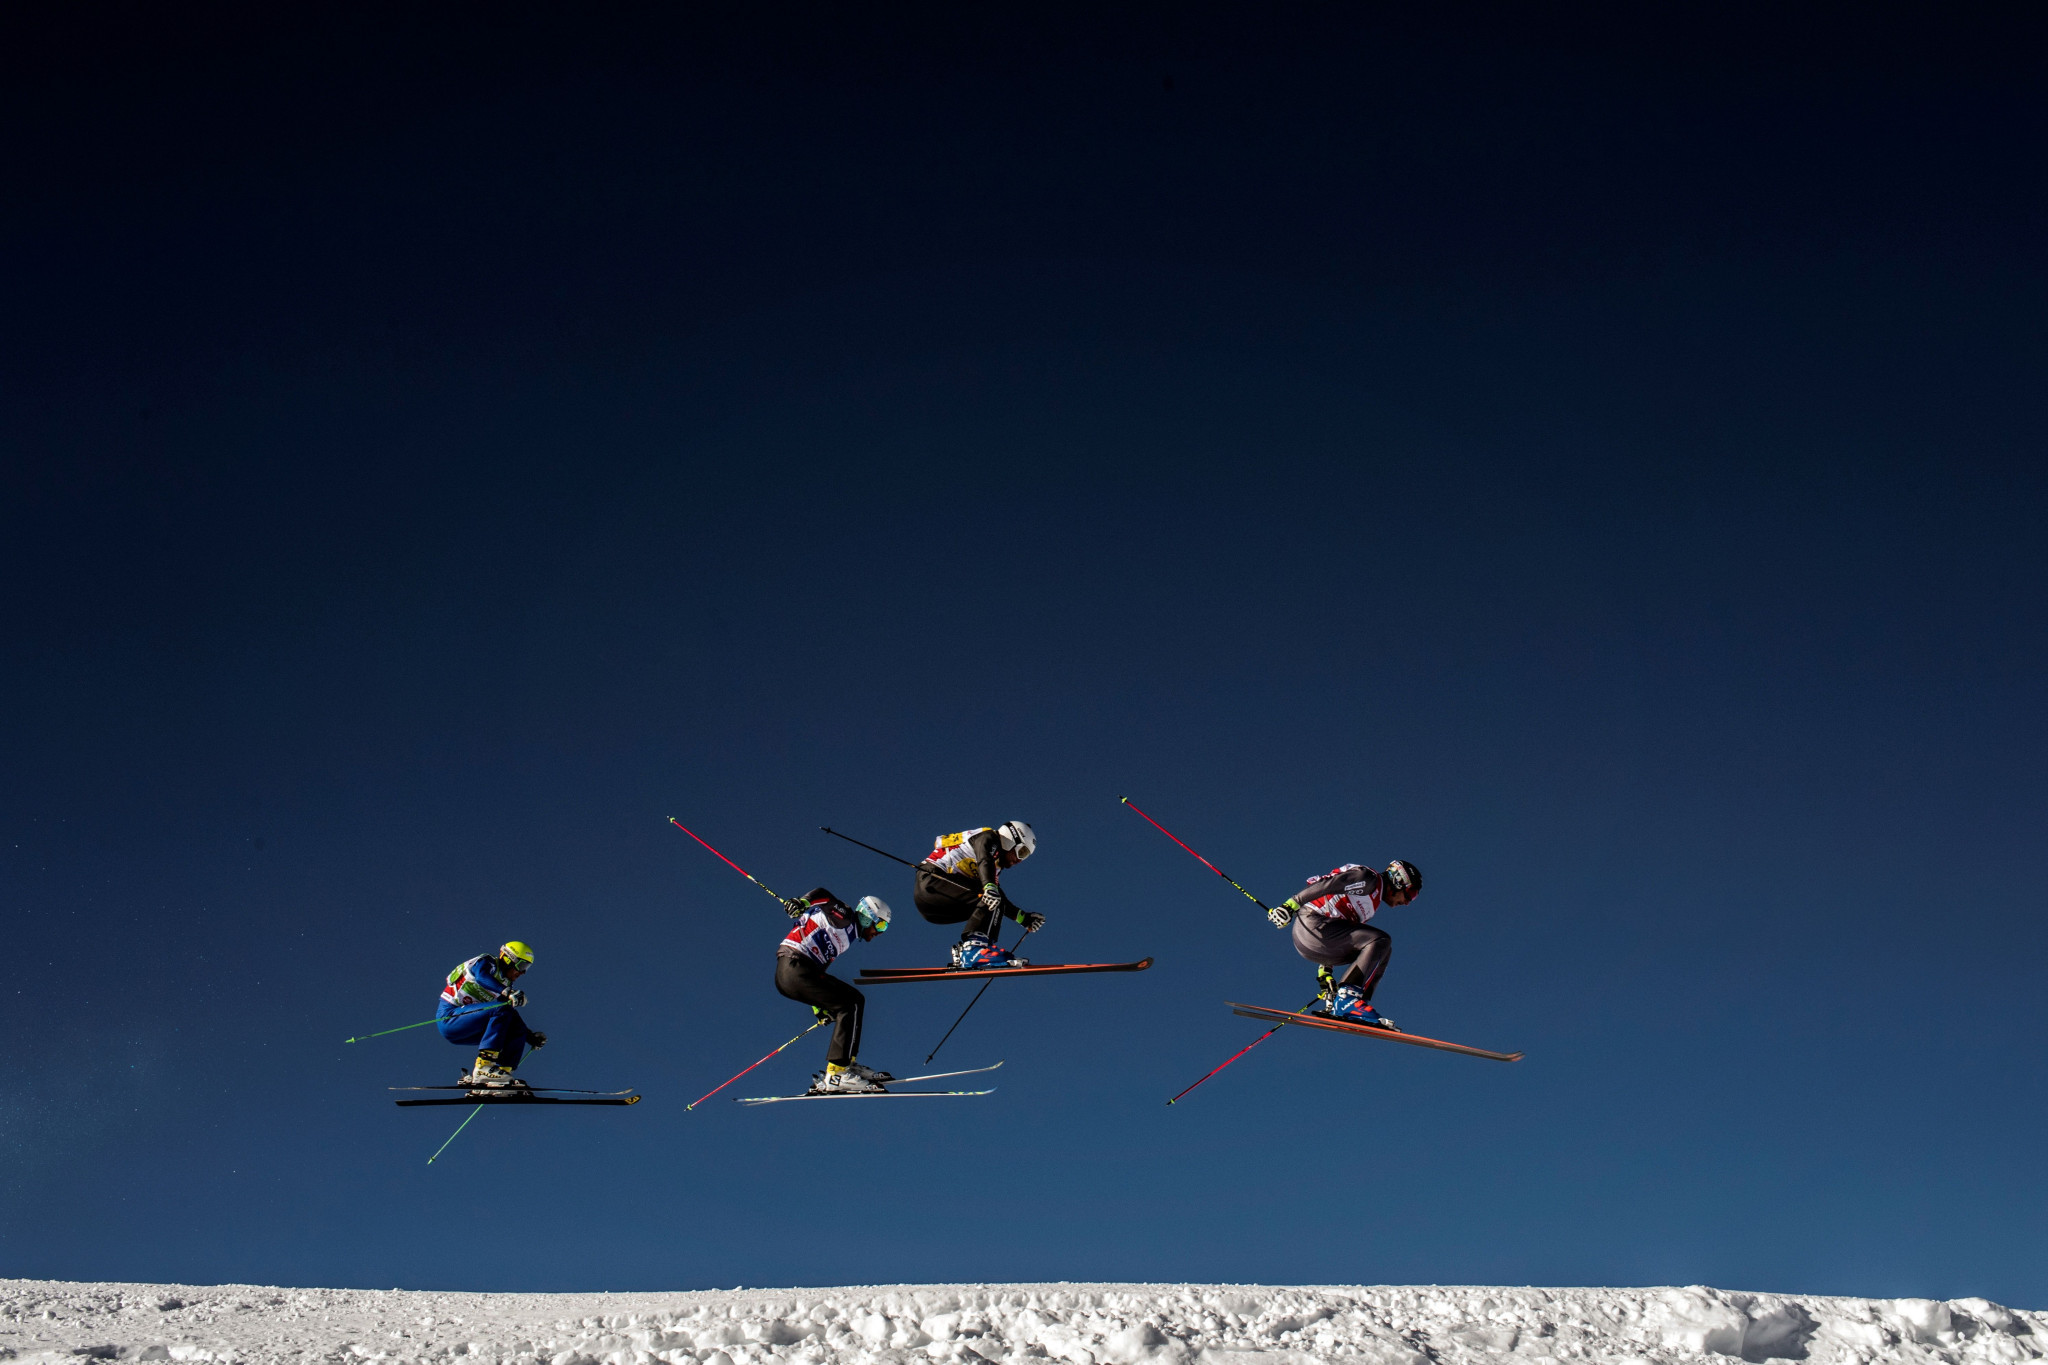 World champion Näslund triumphs at FIS Ski Cross World Cup in Reiteralm